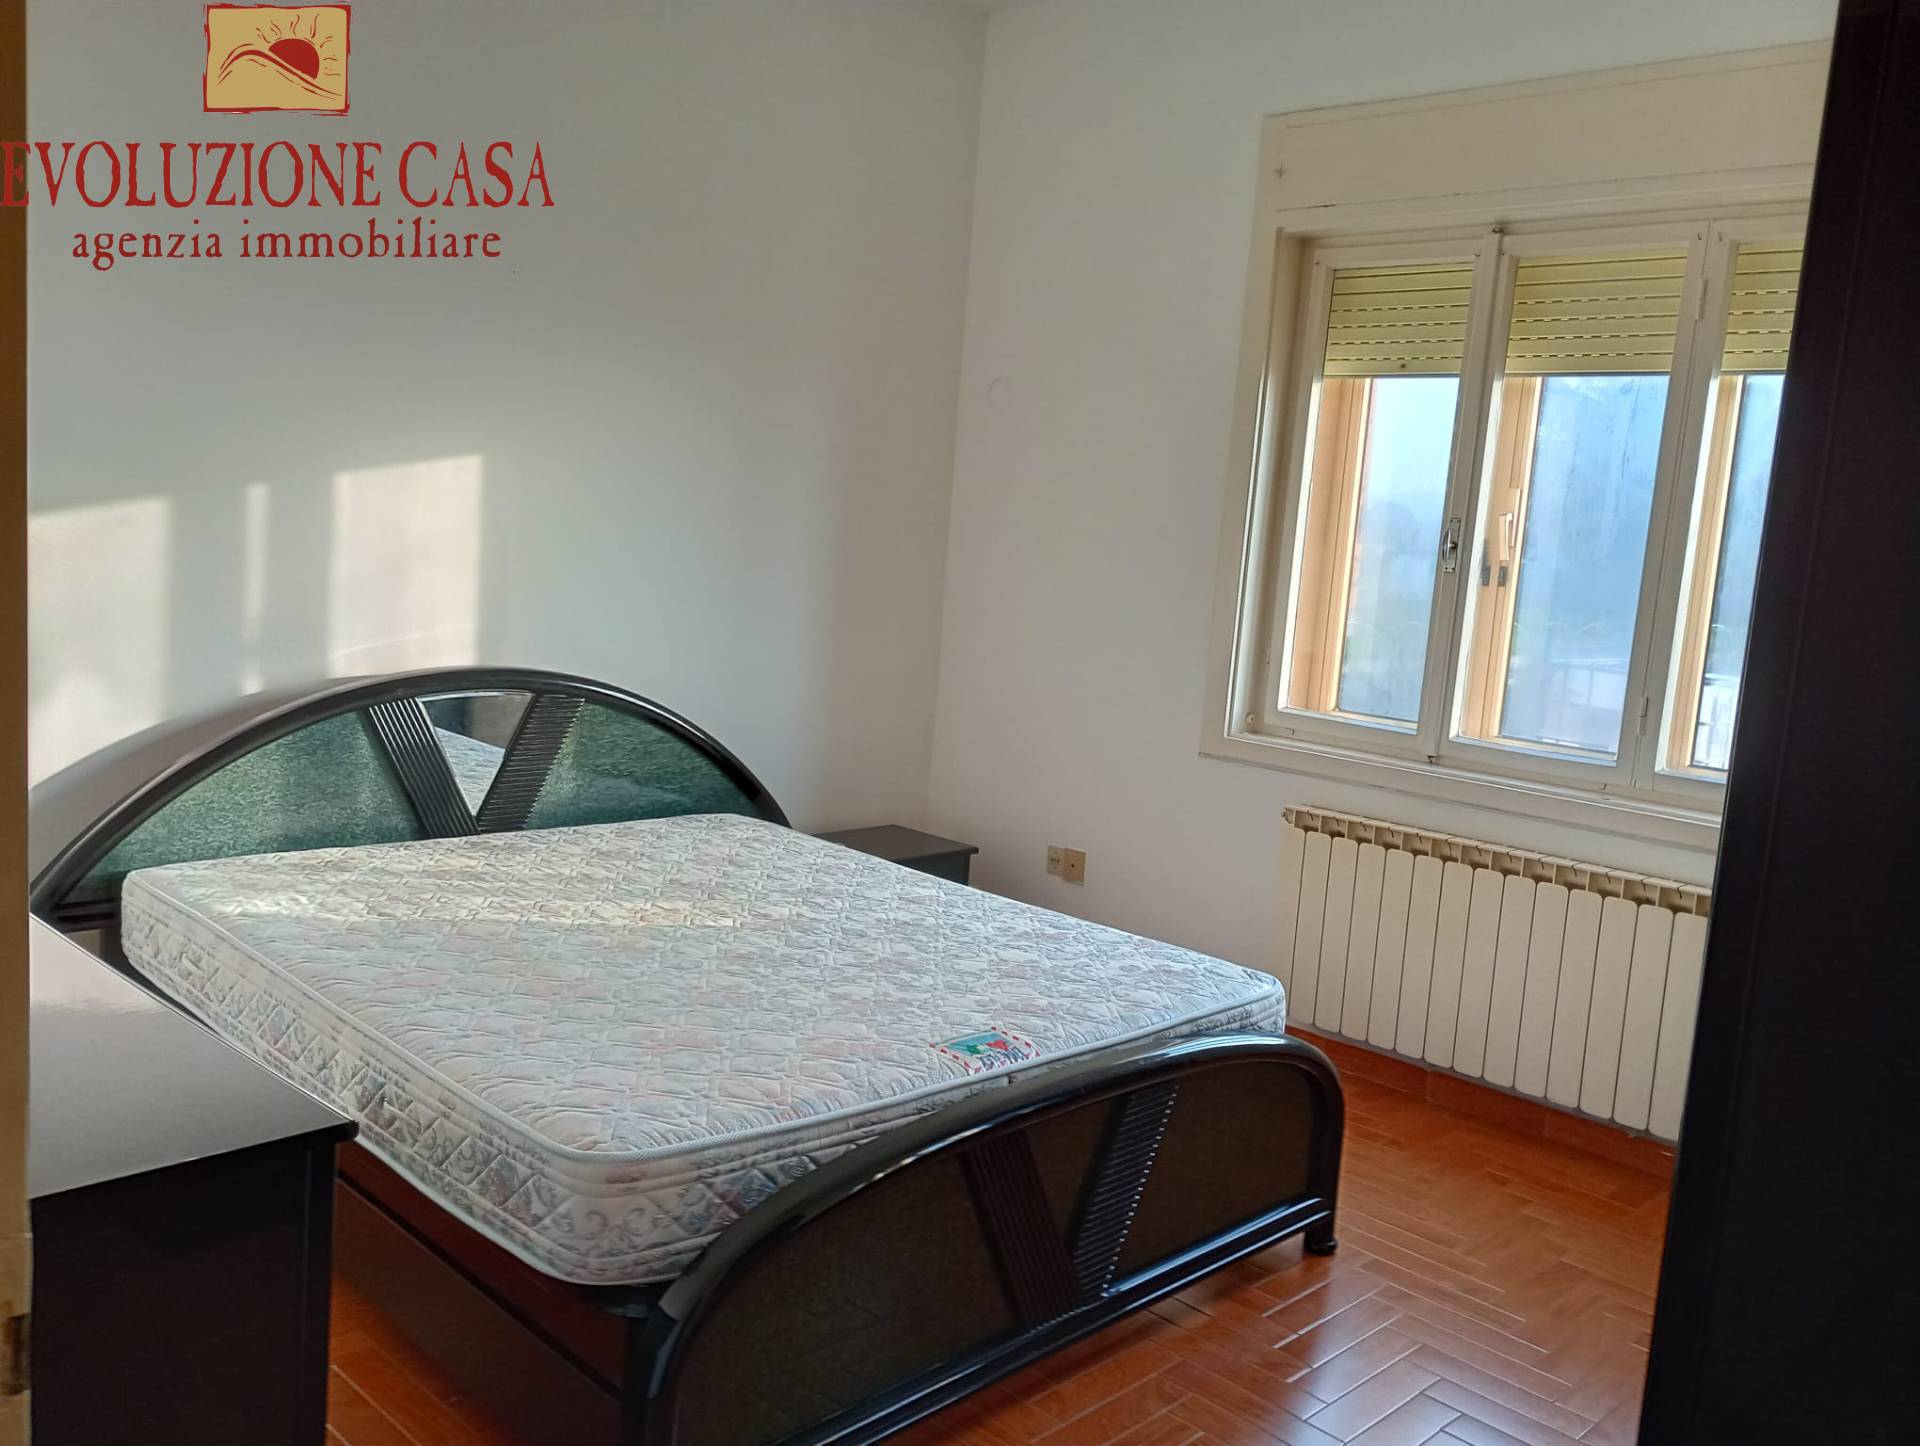 Appartamento in vendita a San Pier d'Isonzo, 5 locali, prezzo € 77.000 | PortaleAgenzieImmobiliari.it